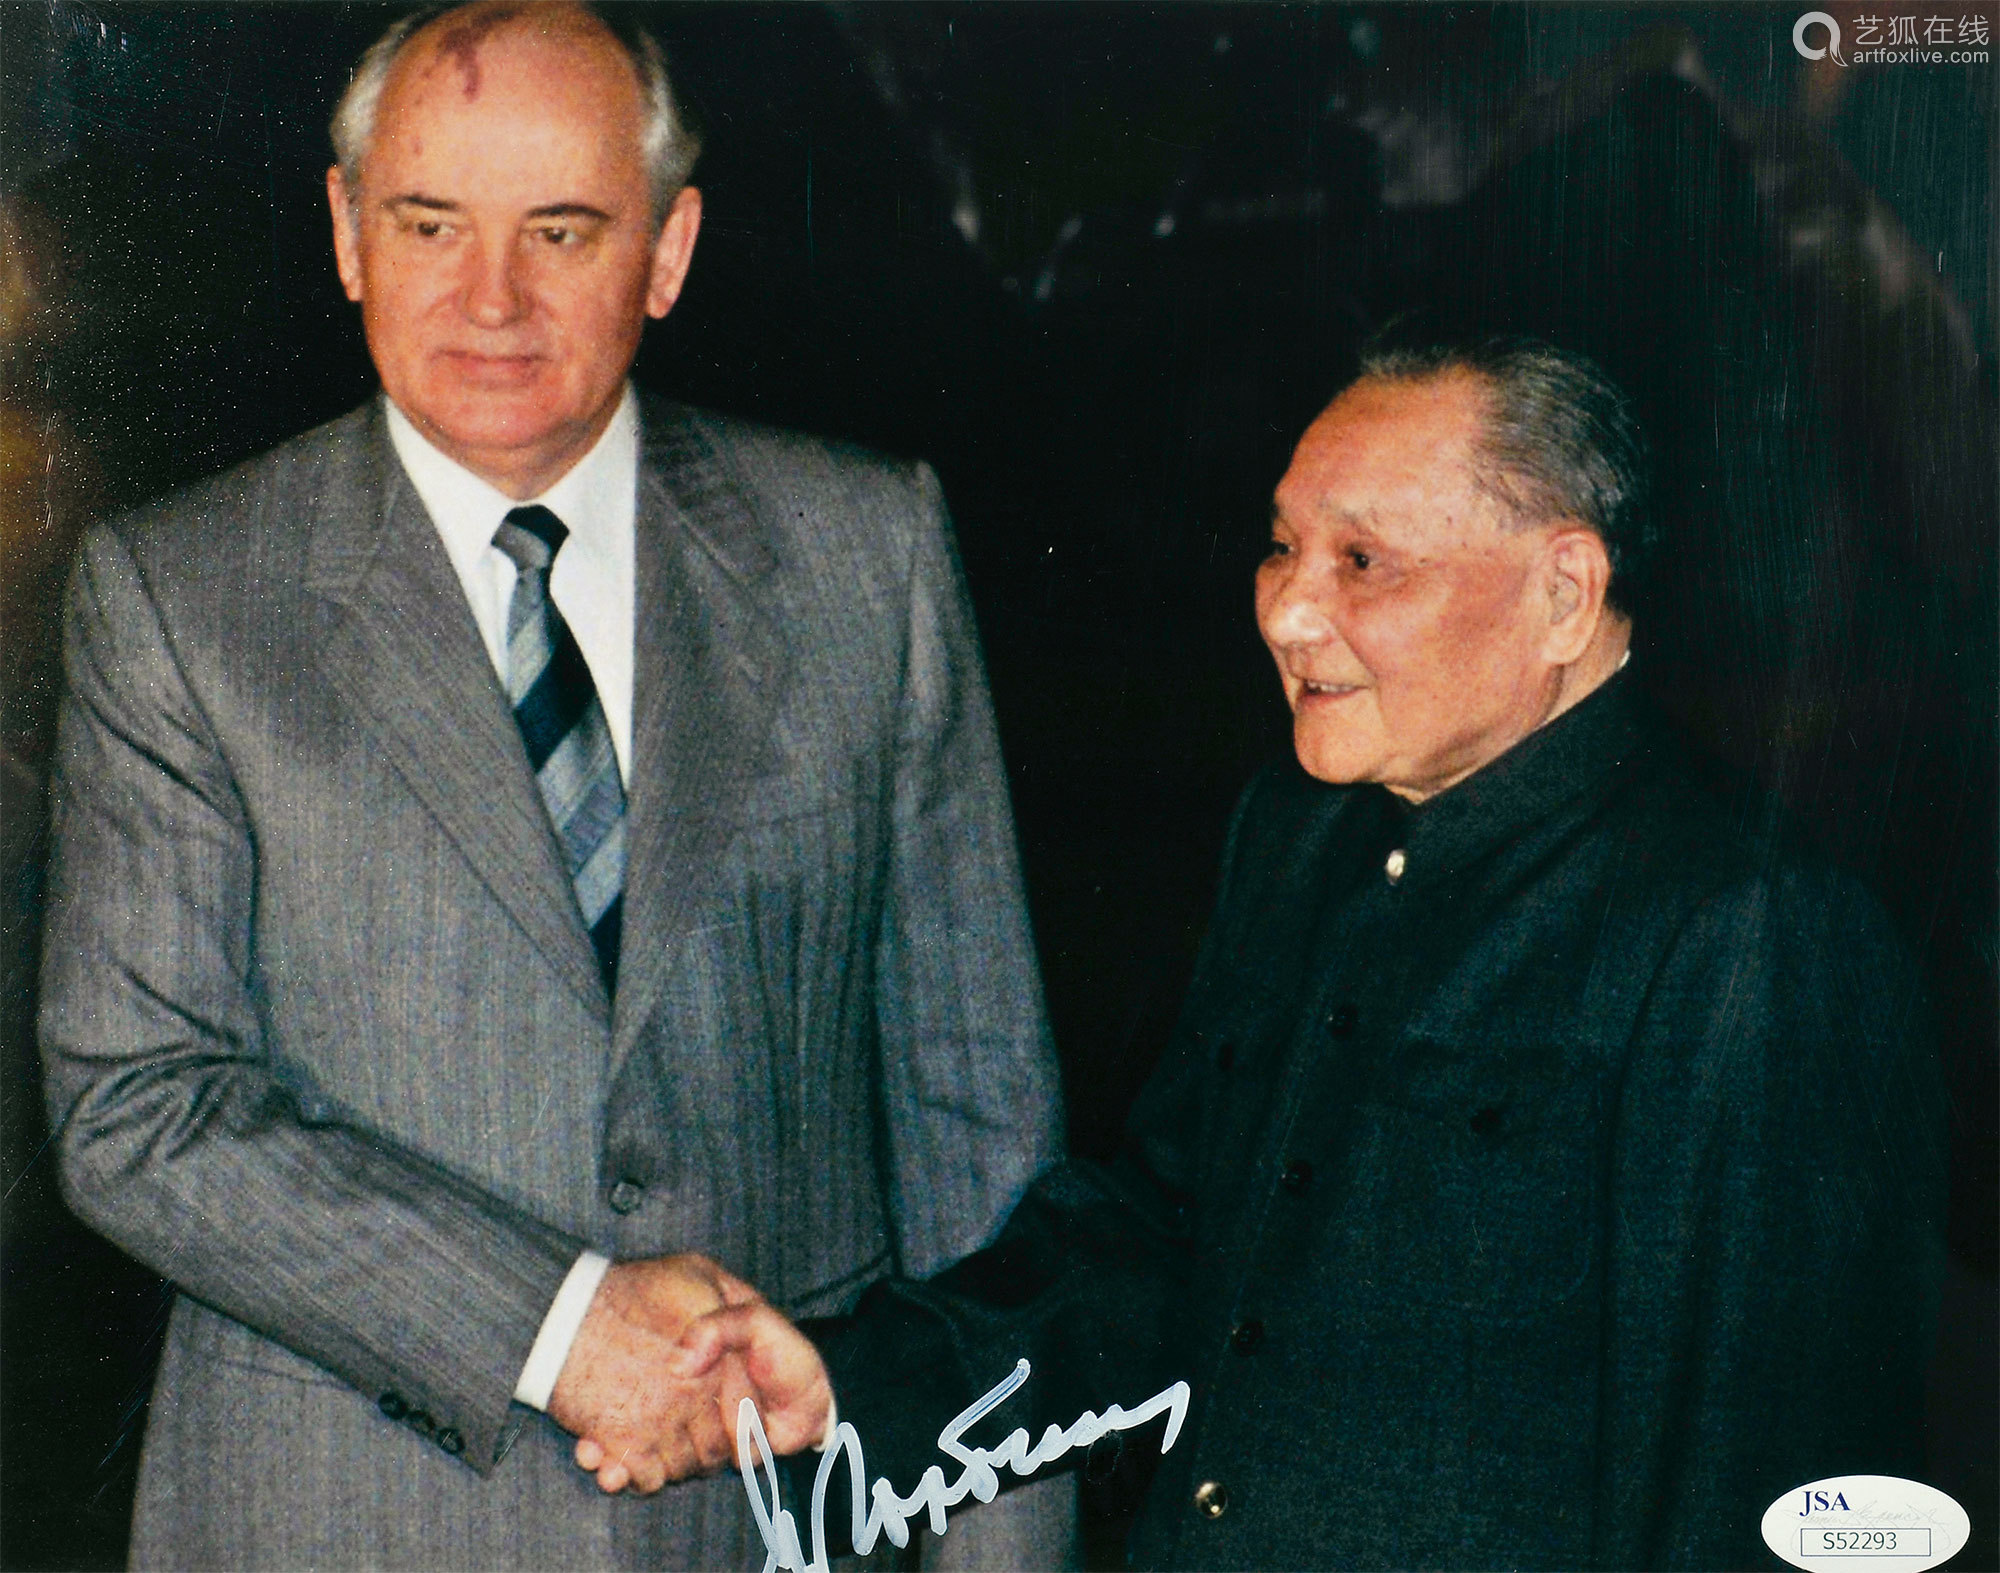 戈尔巴乔夫与邓小平握手签名照片 Deal Price Picture